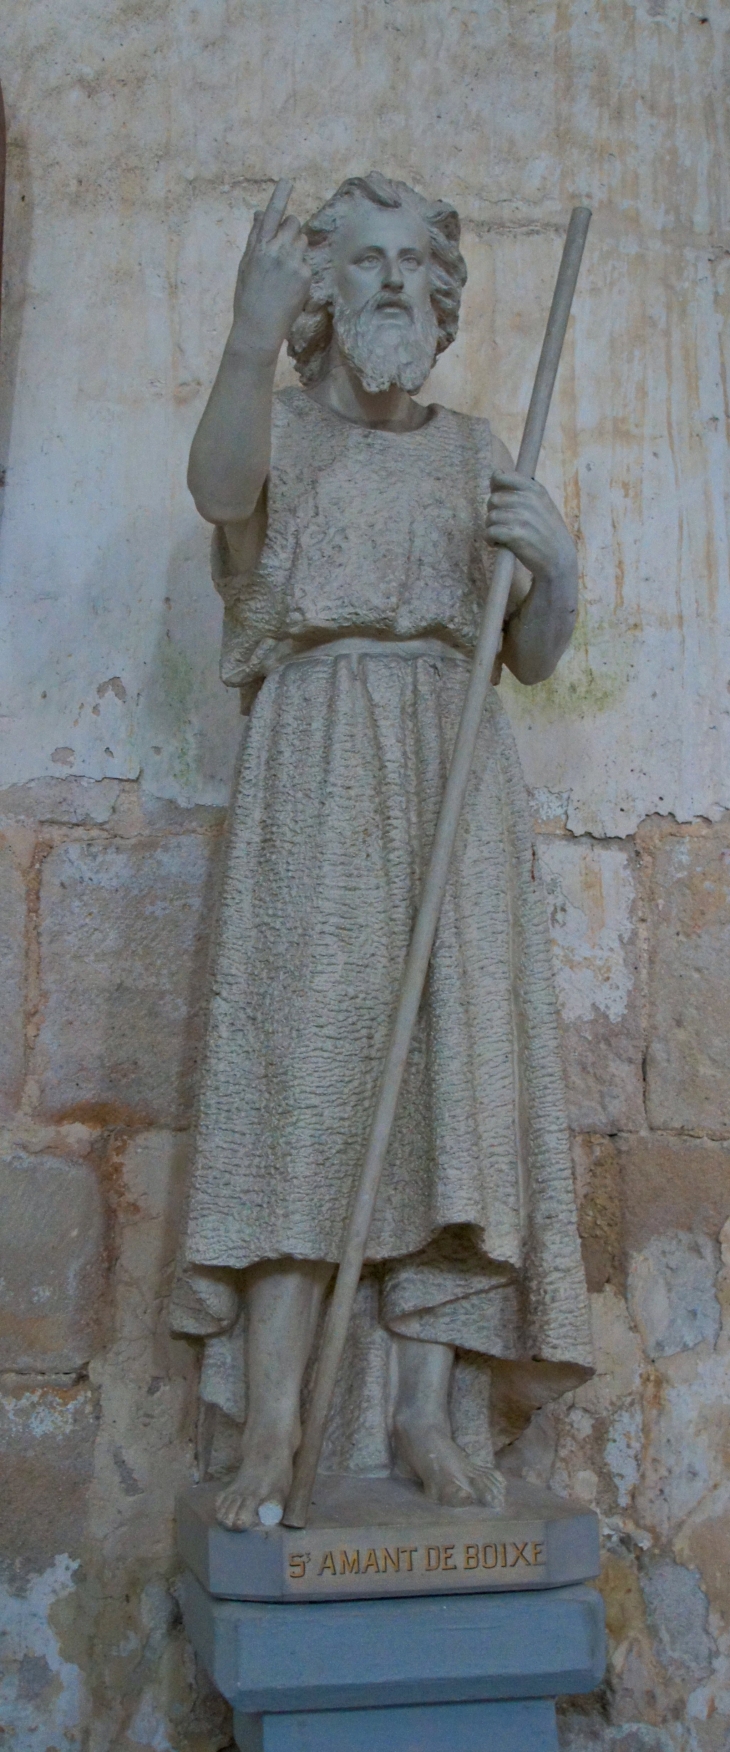 Eglise abbatiale : statue de Saint Amant de Boixe. - Saint-Amant-de-Boixe